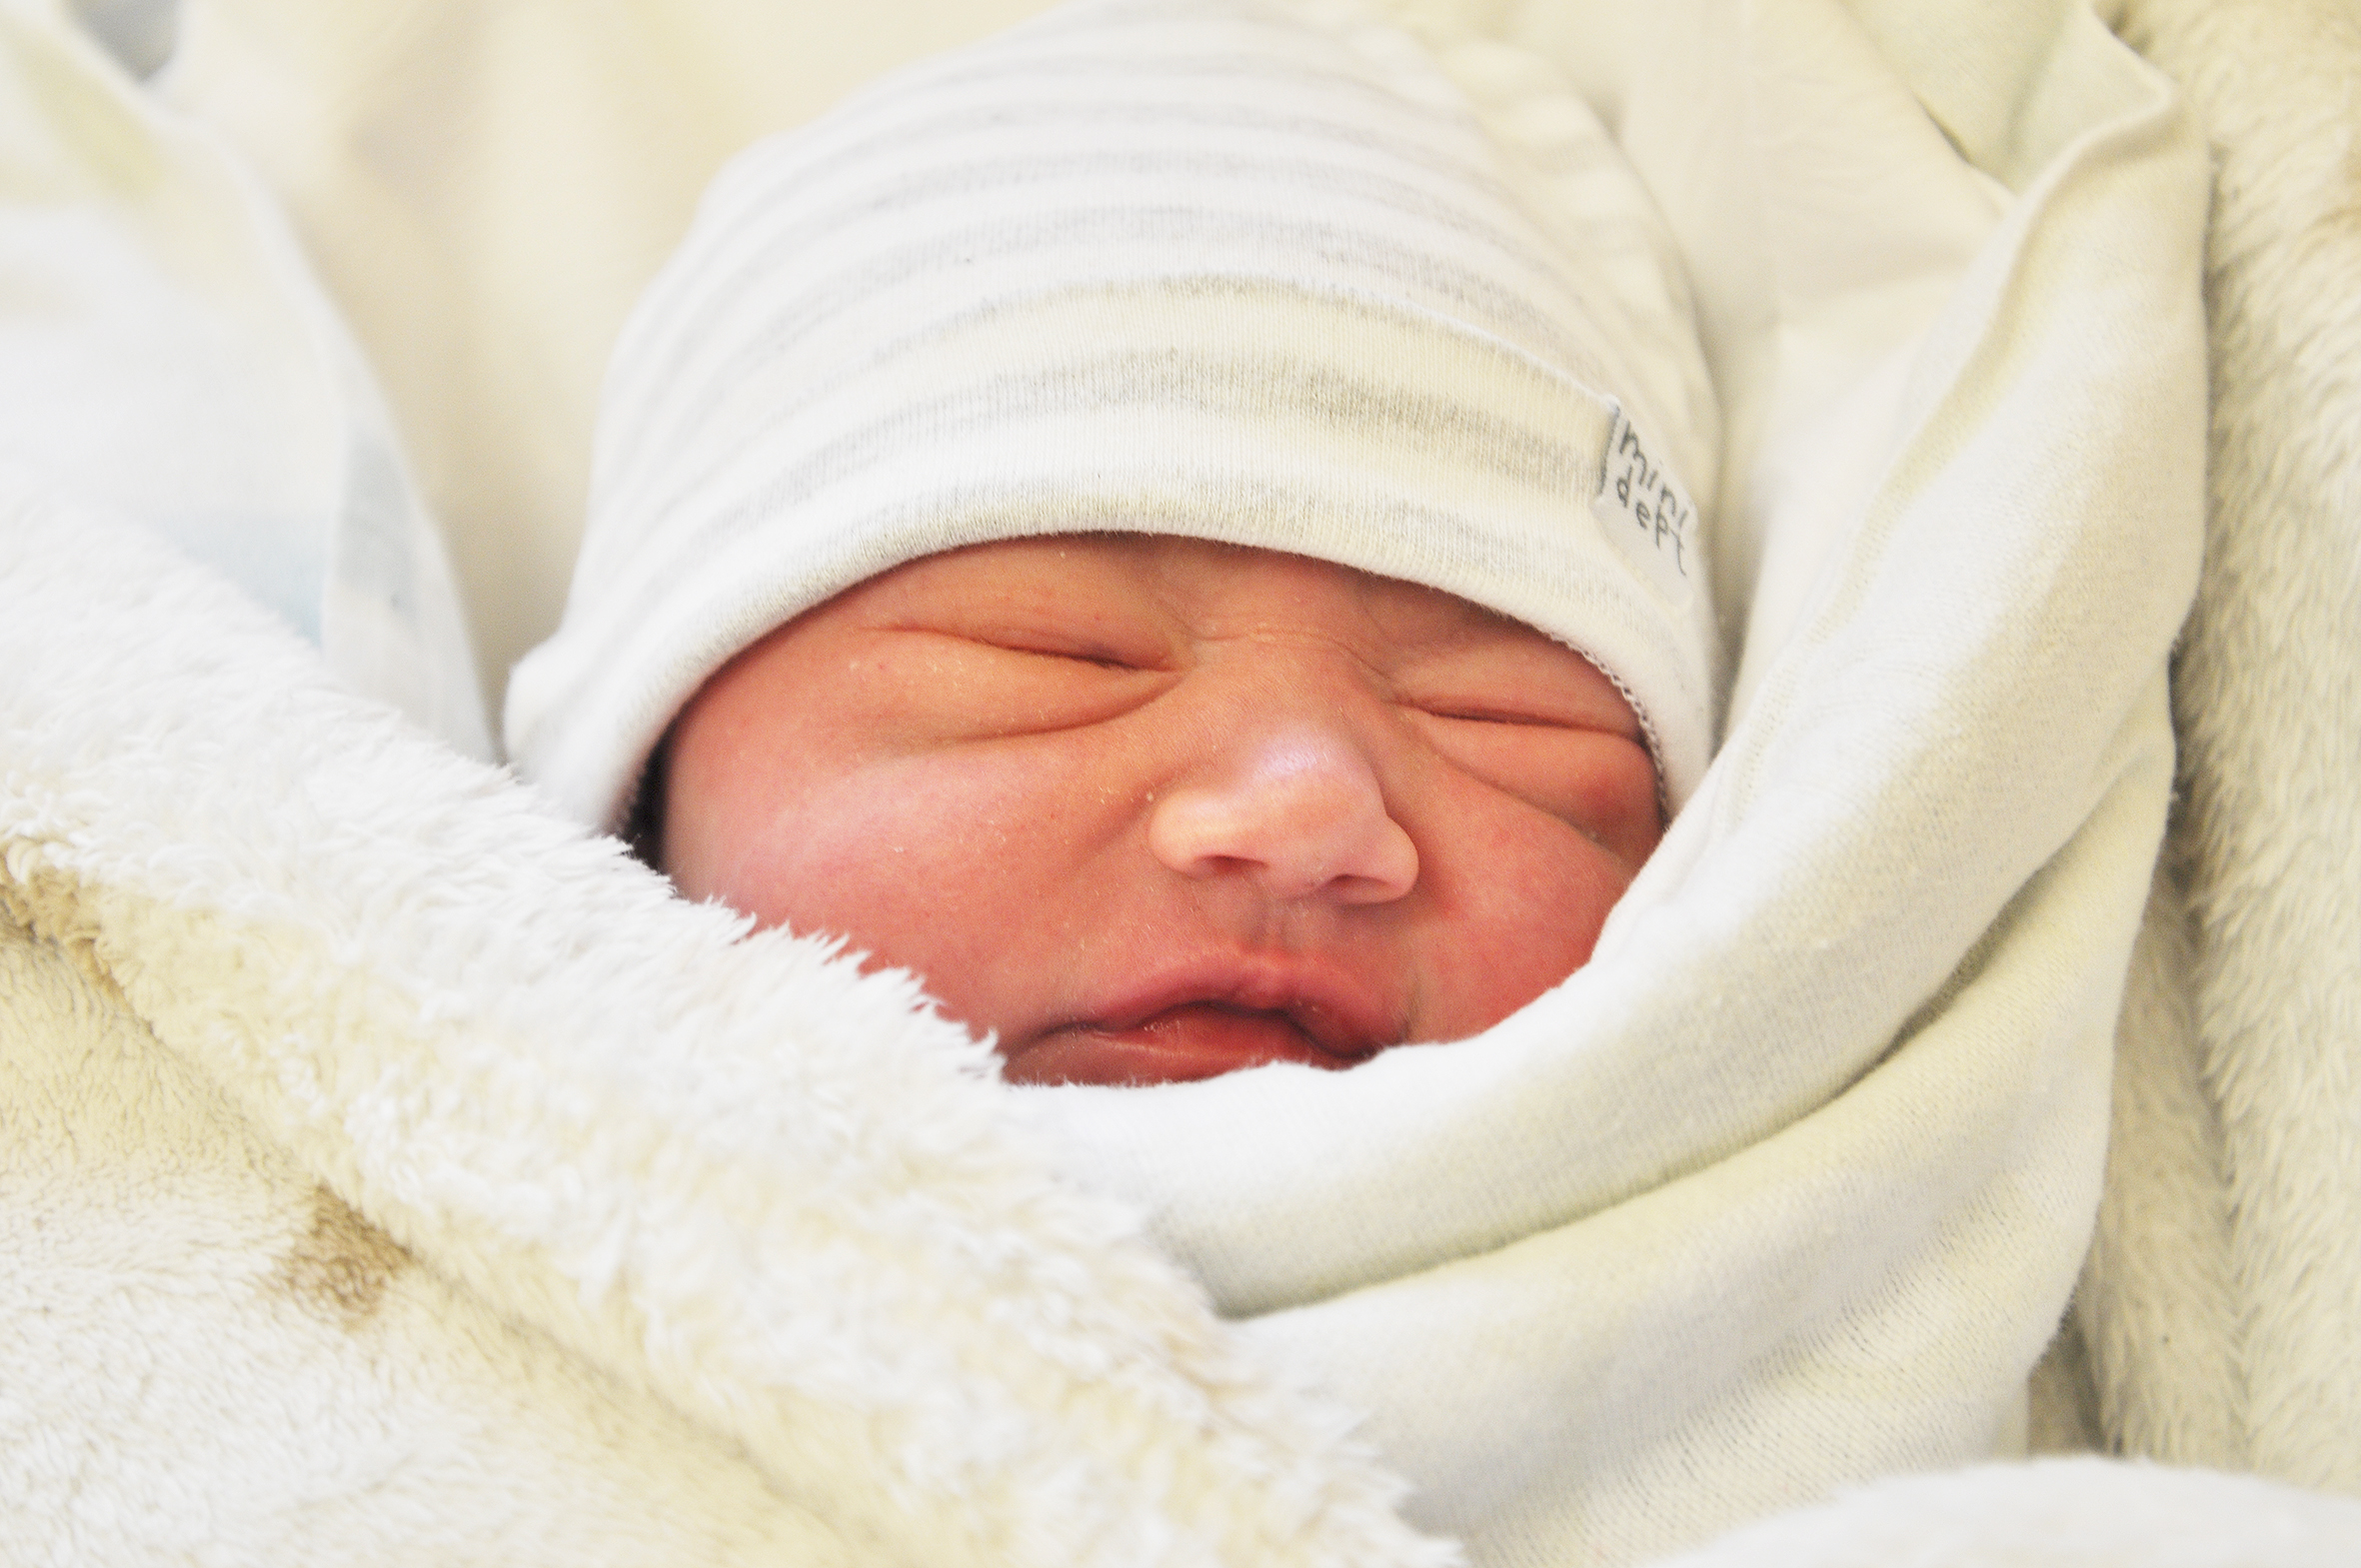 Melania Lukiant Seva urodziła się w Raciborzu 27 marca o 8.03. Jest córeczką Kateryny i Oleksija. Na początek ważyła 3550 g i mierzyła 55 cm. Dziewczynka ma braci Maksyma i Oleksija.